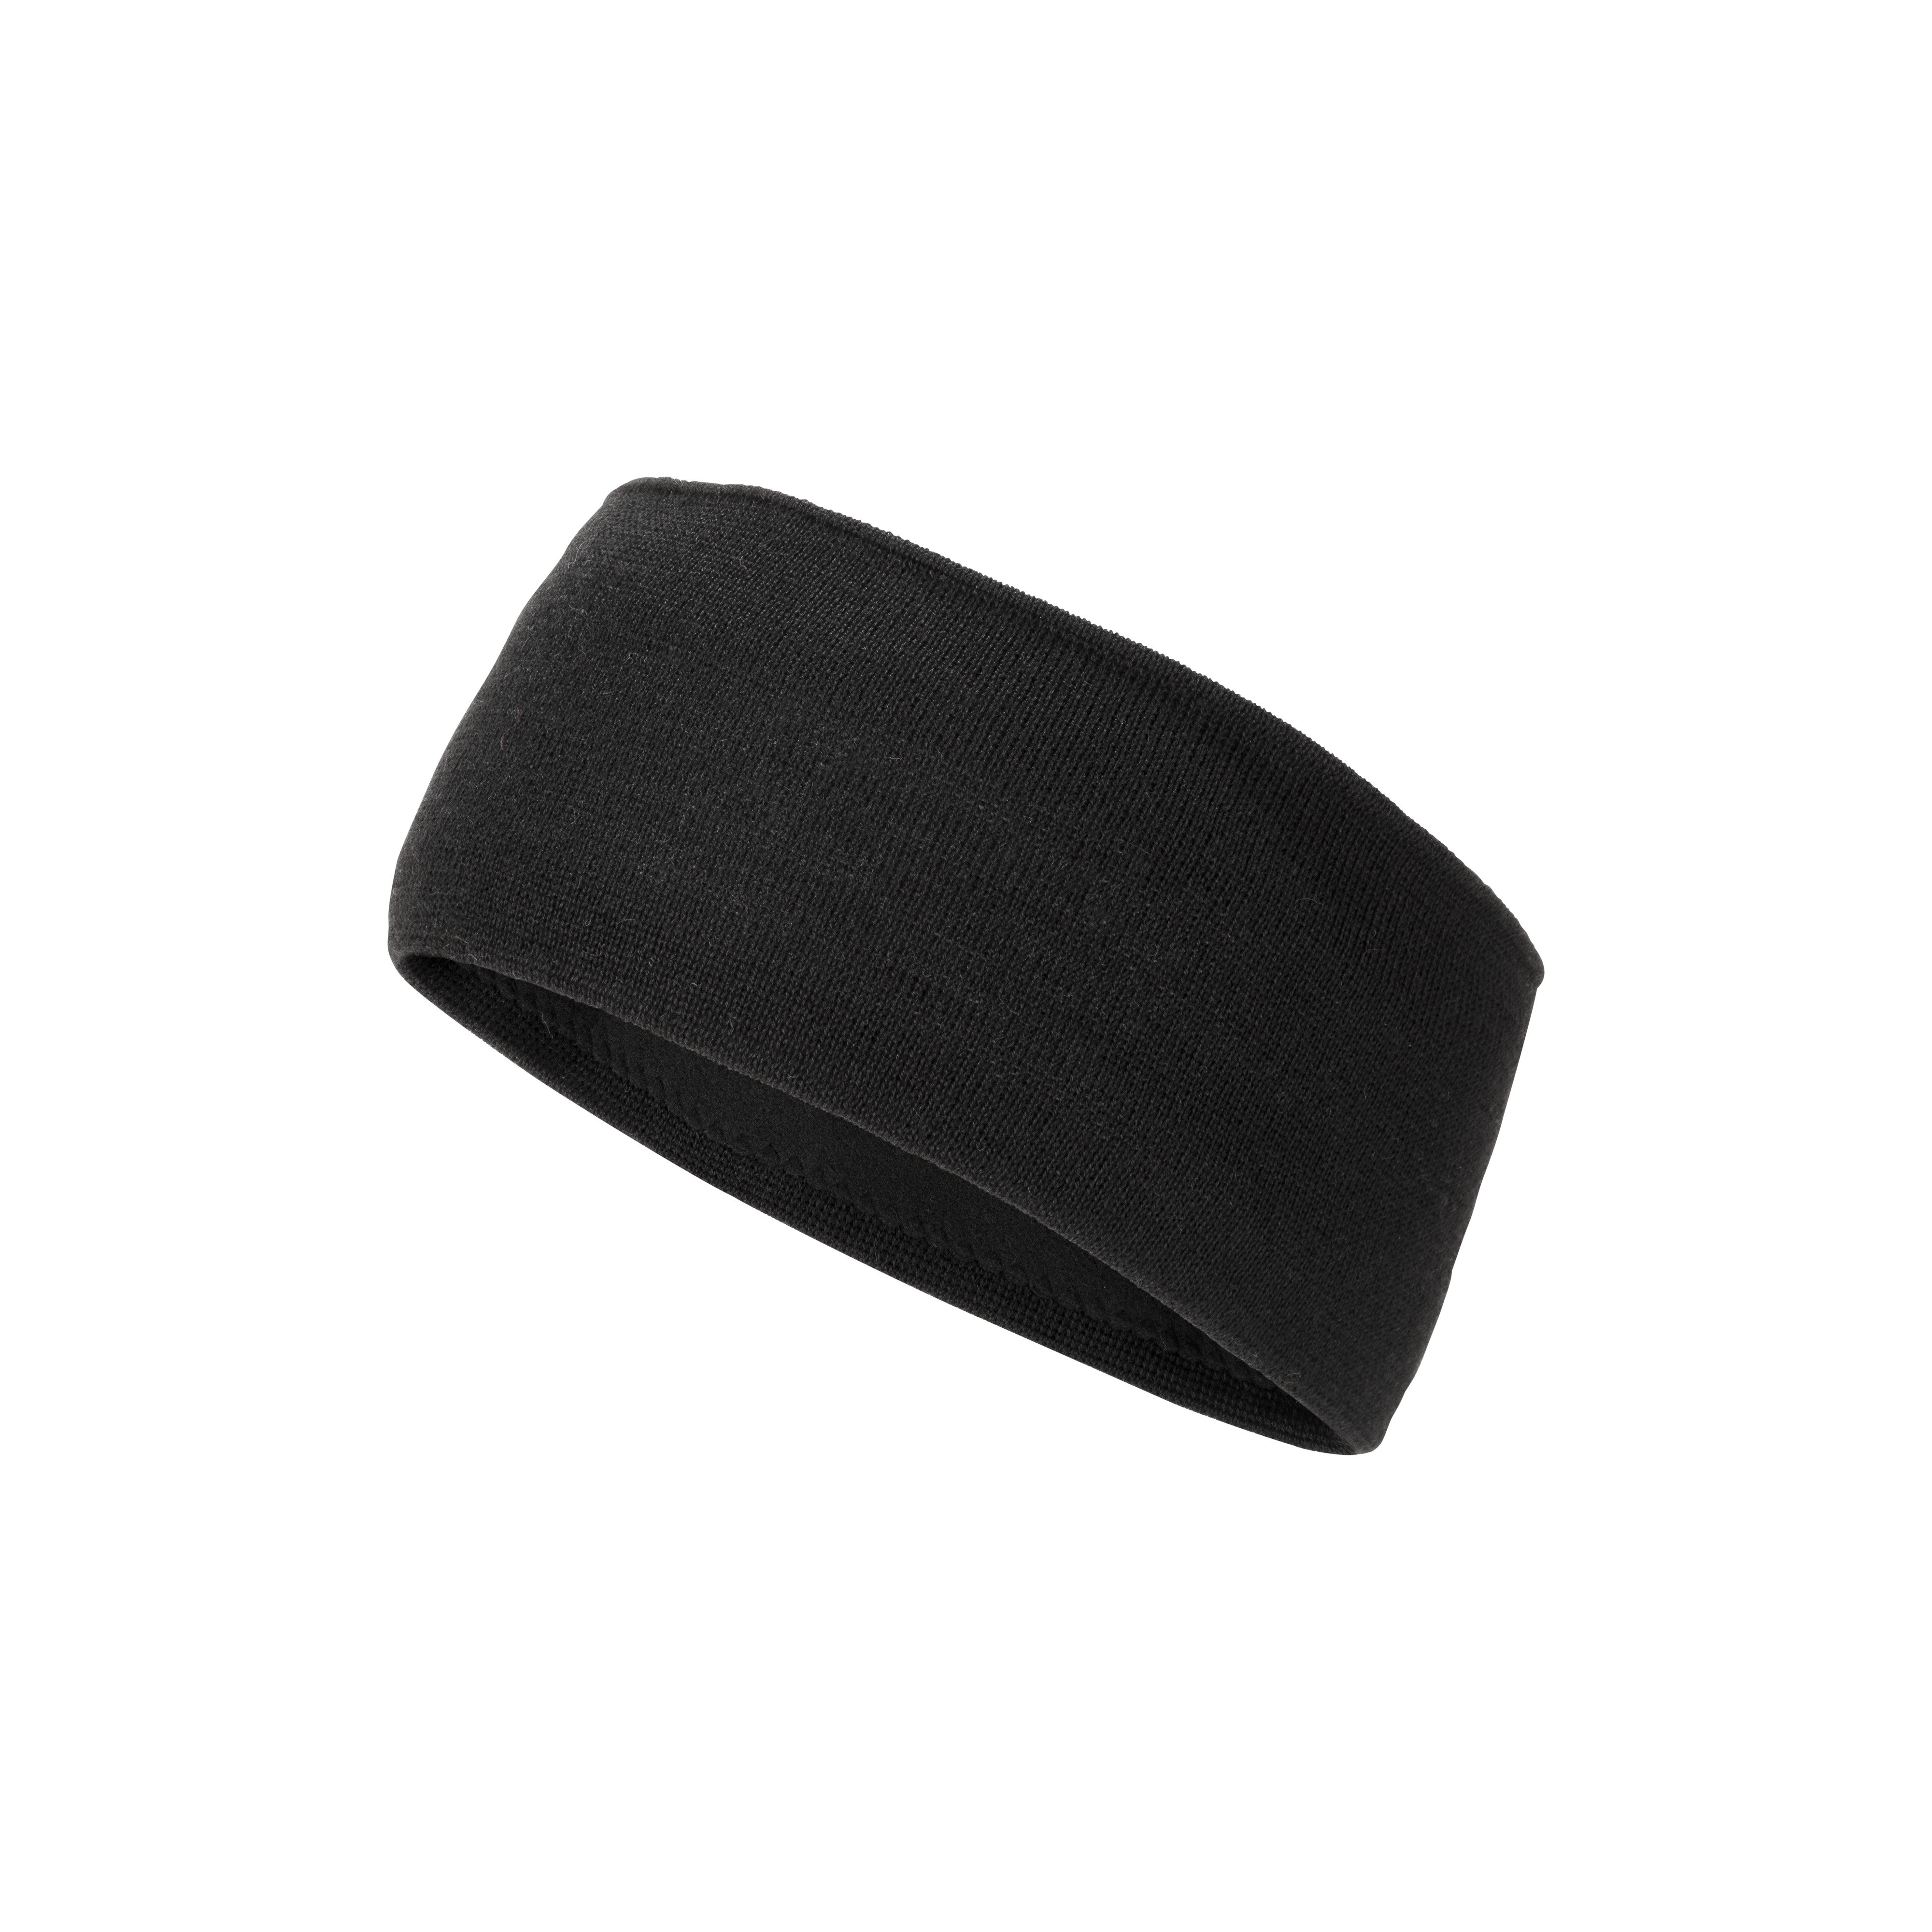 Tweak Headband - black-titanium, one size product image